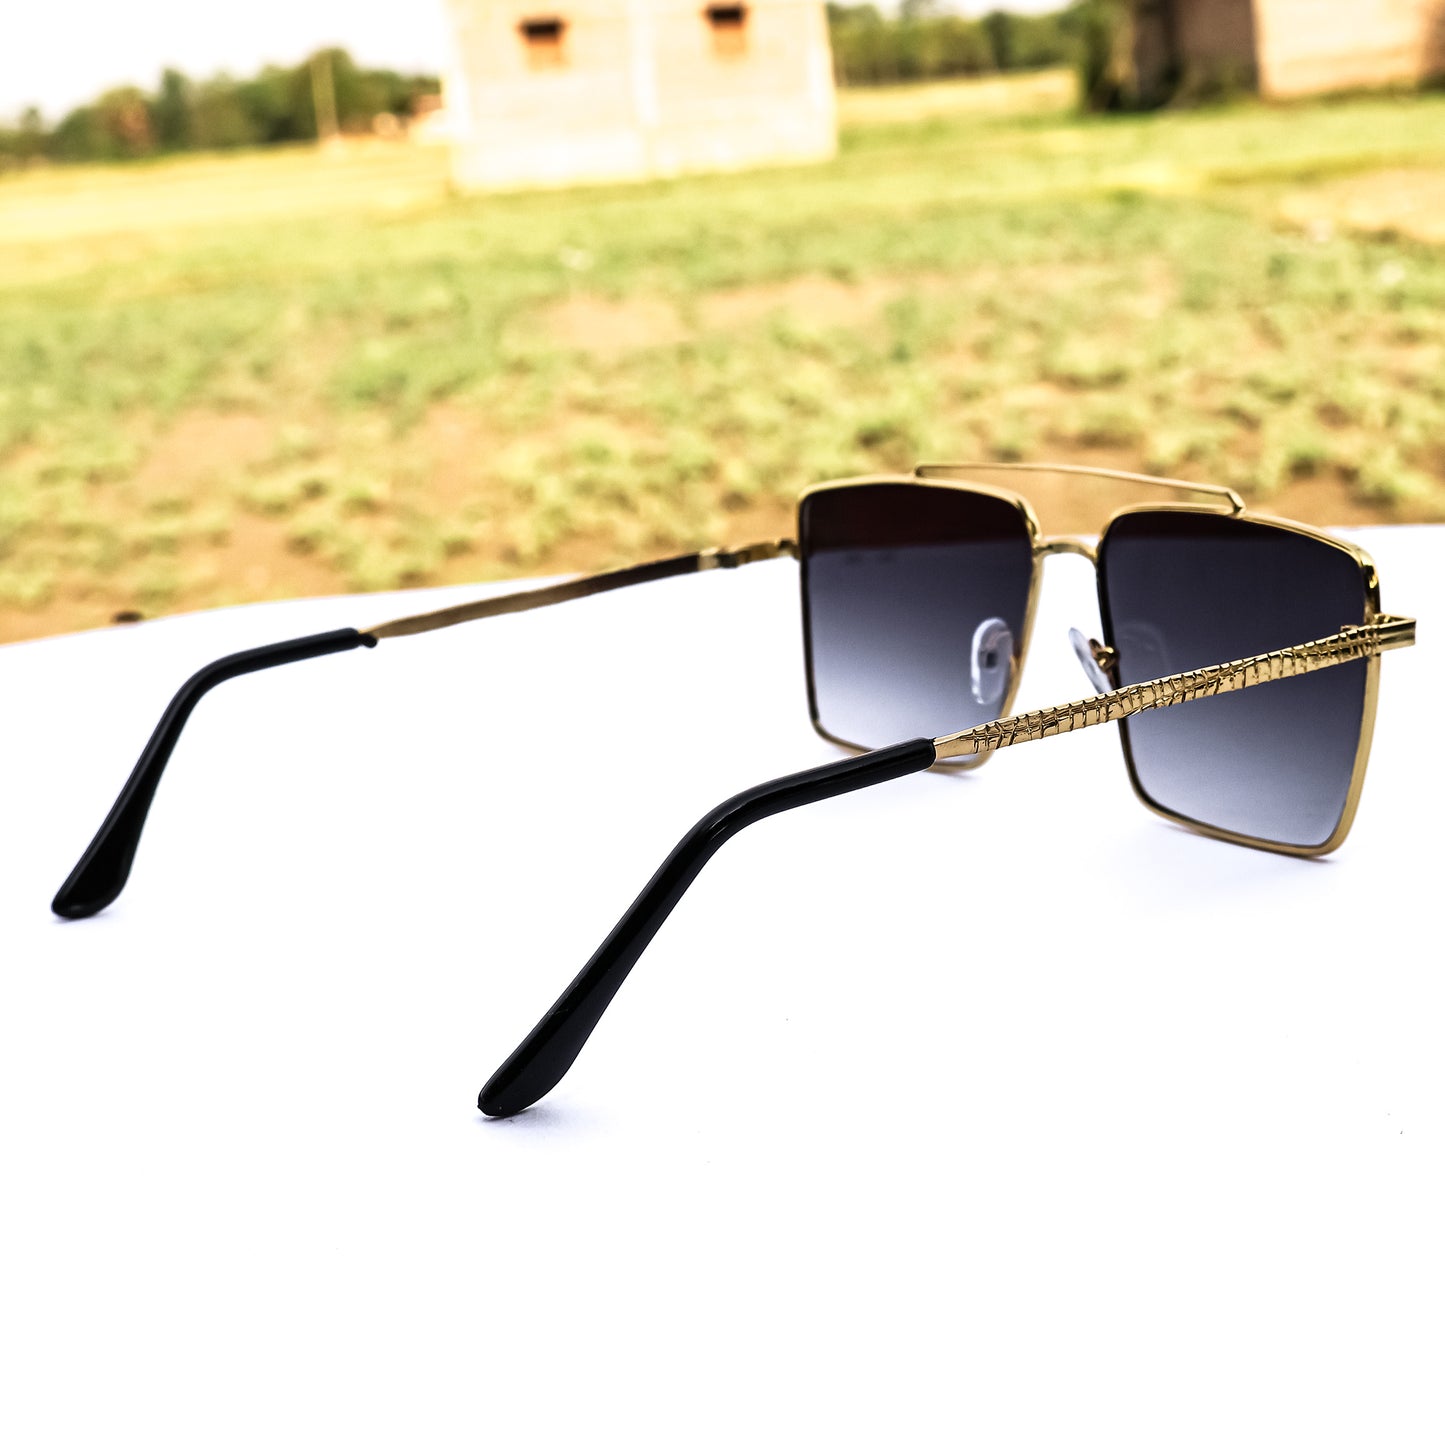 Jiebo Black Full Rim Square Men's Sunglasses